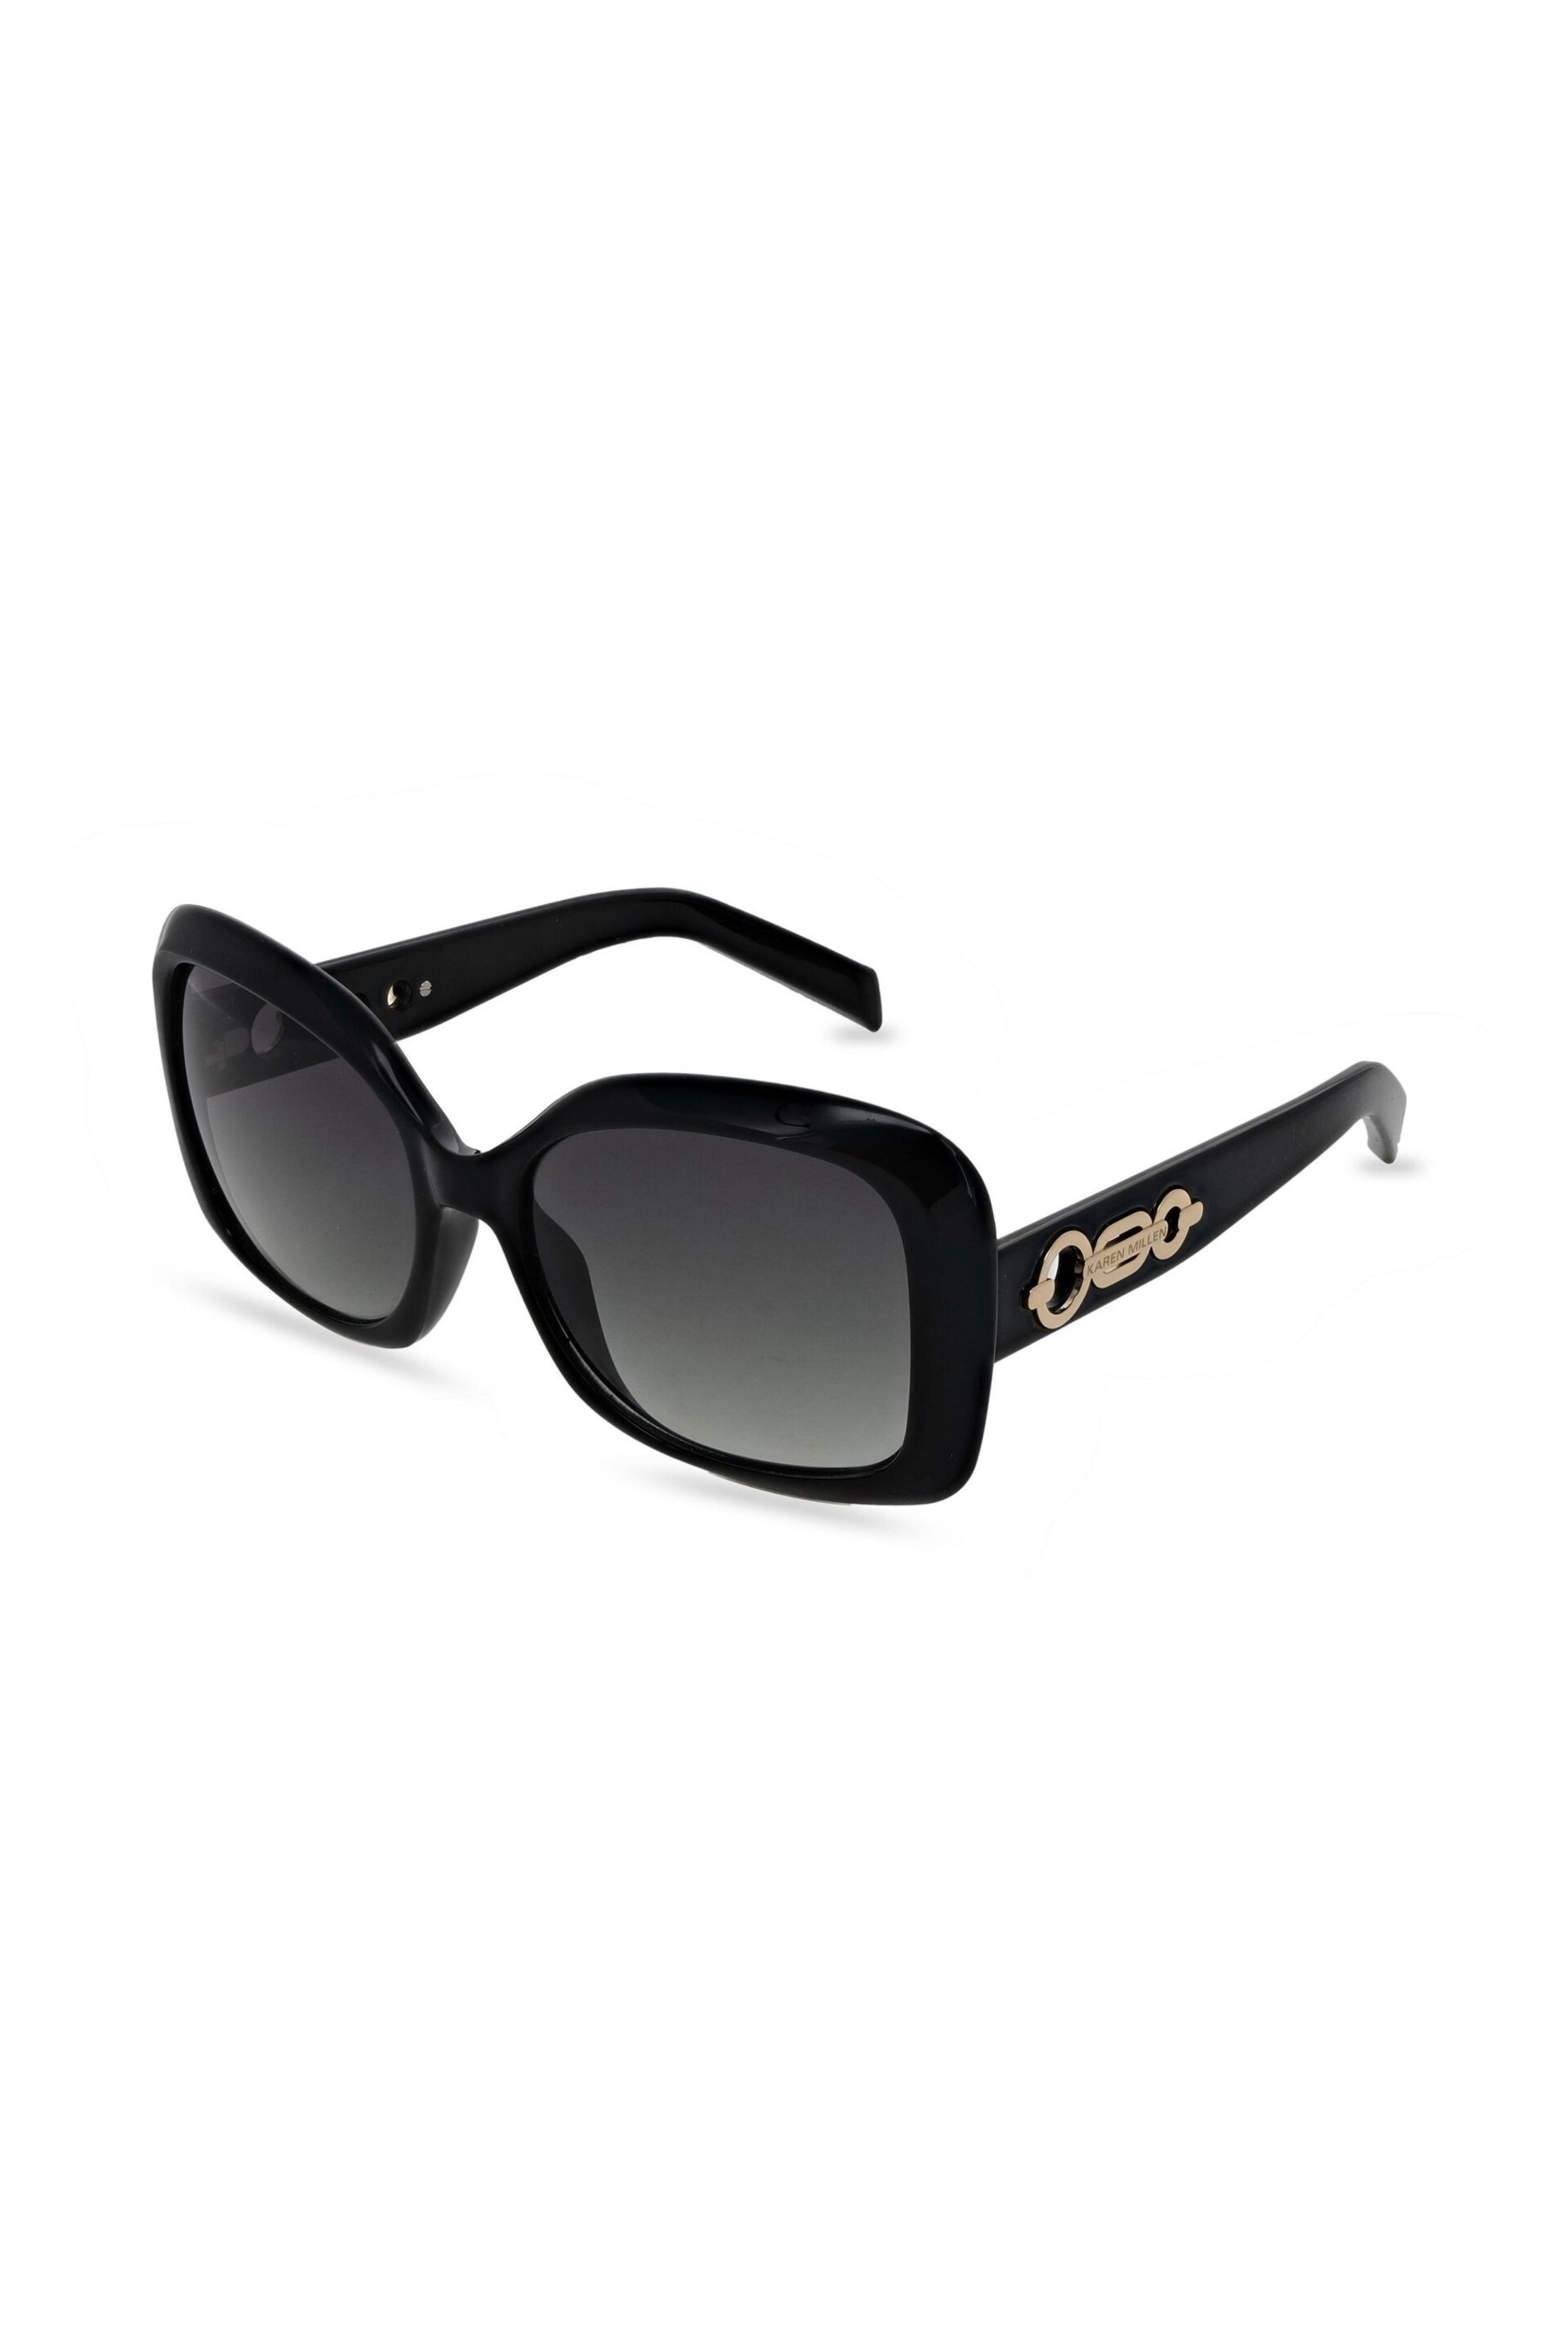 Karen Millen Black Sunglasses - Image 1 of 5